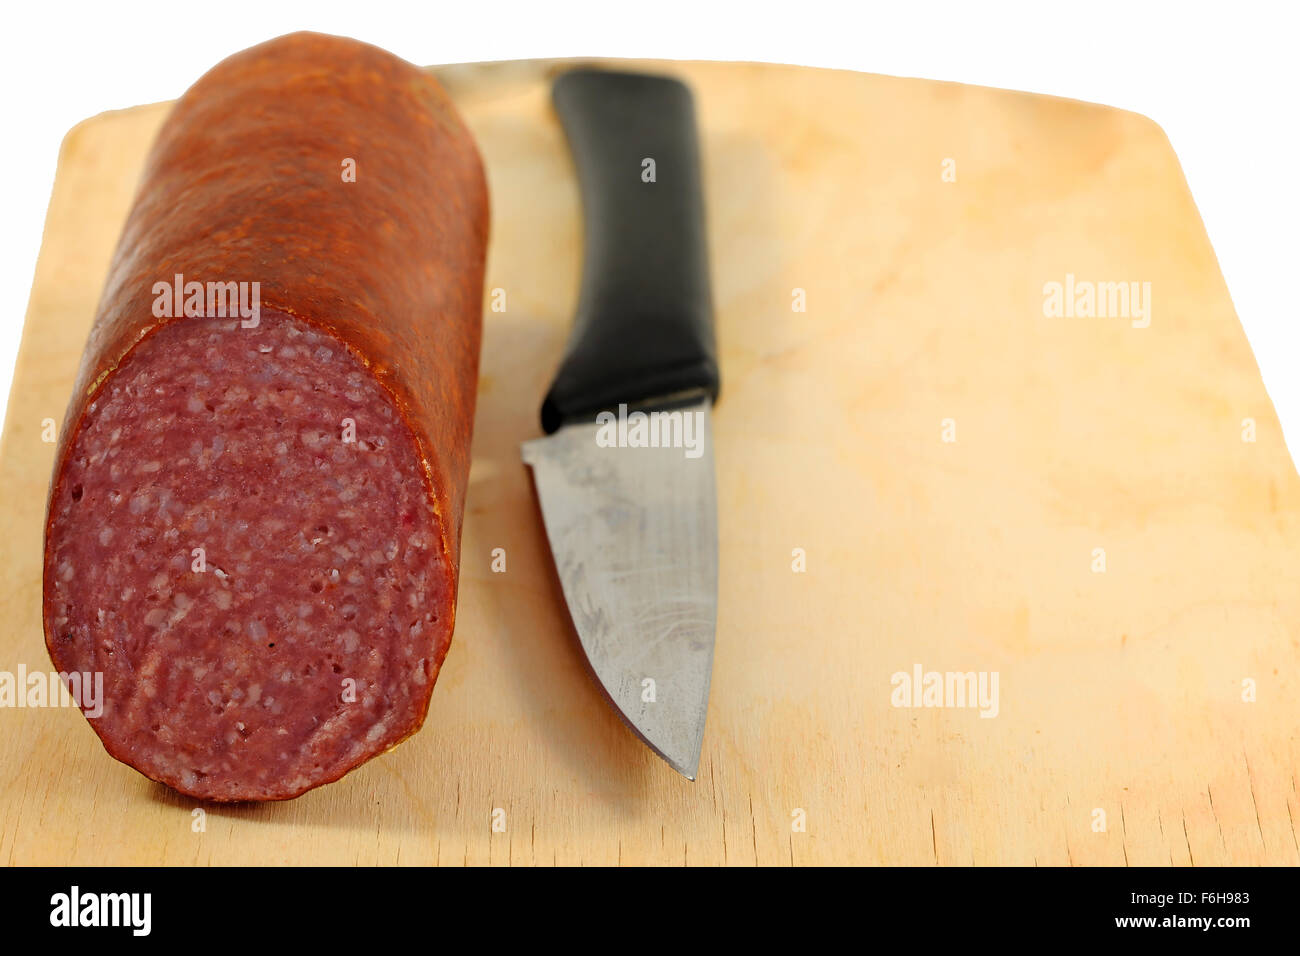 Leckere Wurst Fleisch auf einem Holzbrett fotografiert hautnah Stockfoto